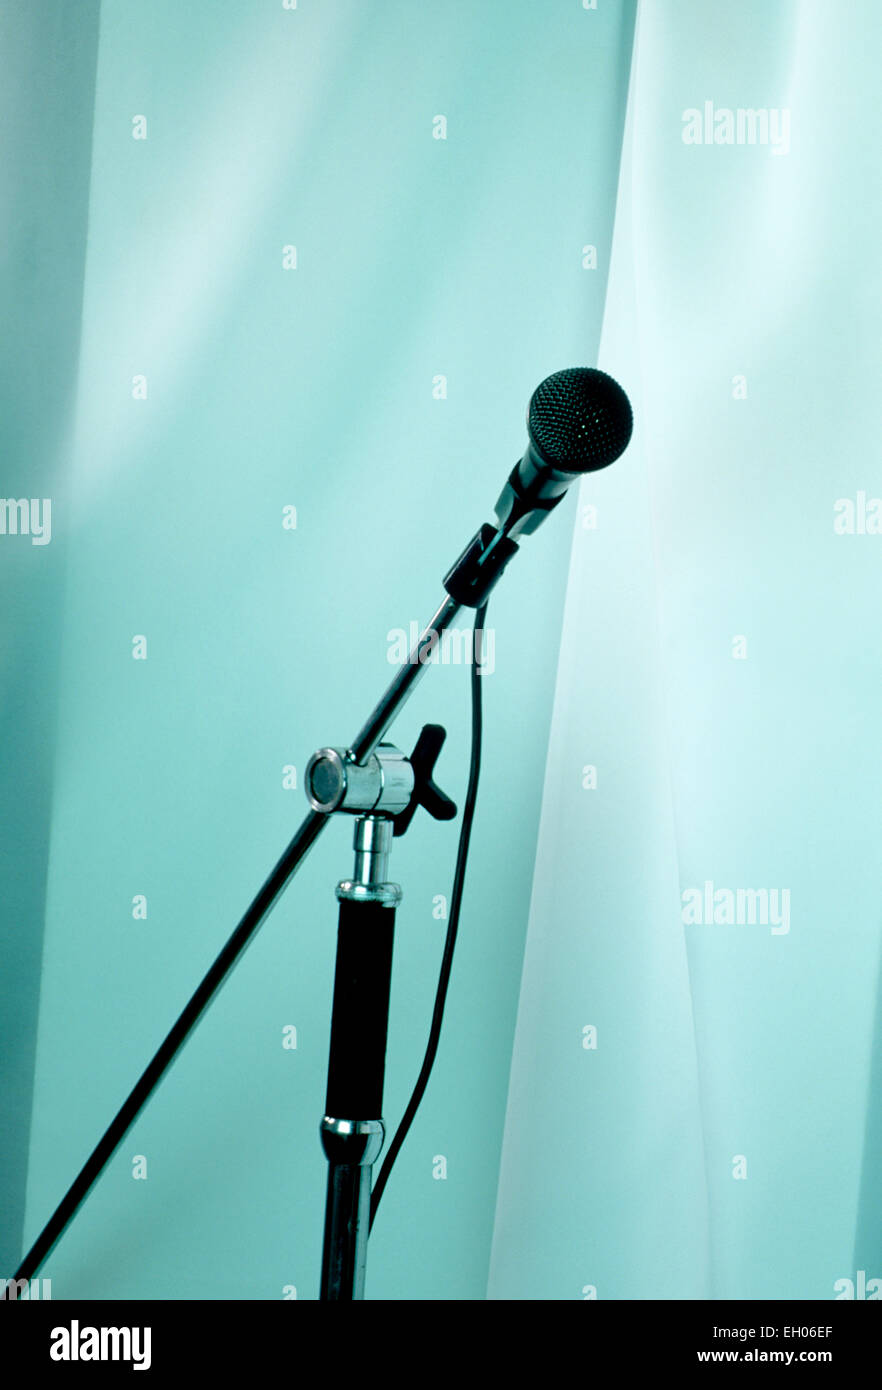 Ancora vita immagine di un microfono e di un supporto contro un morbido blu tenda colorata Foto Stock